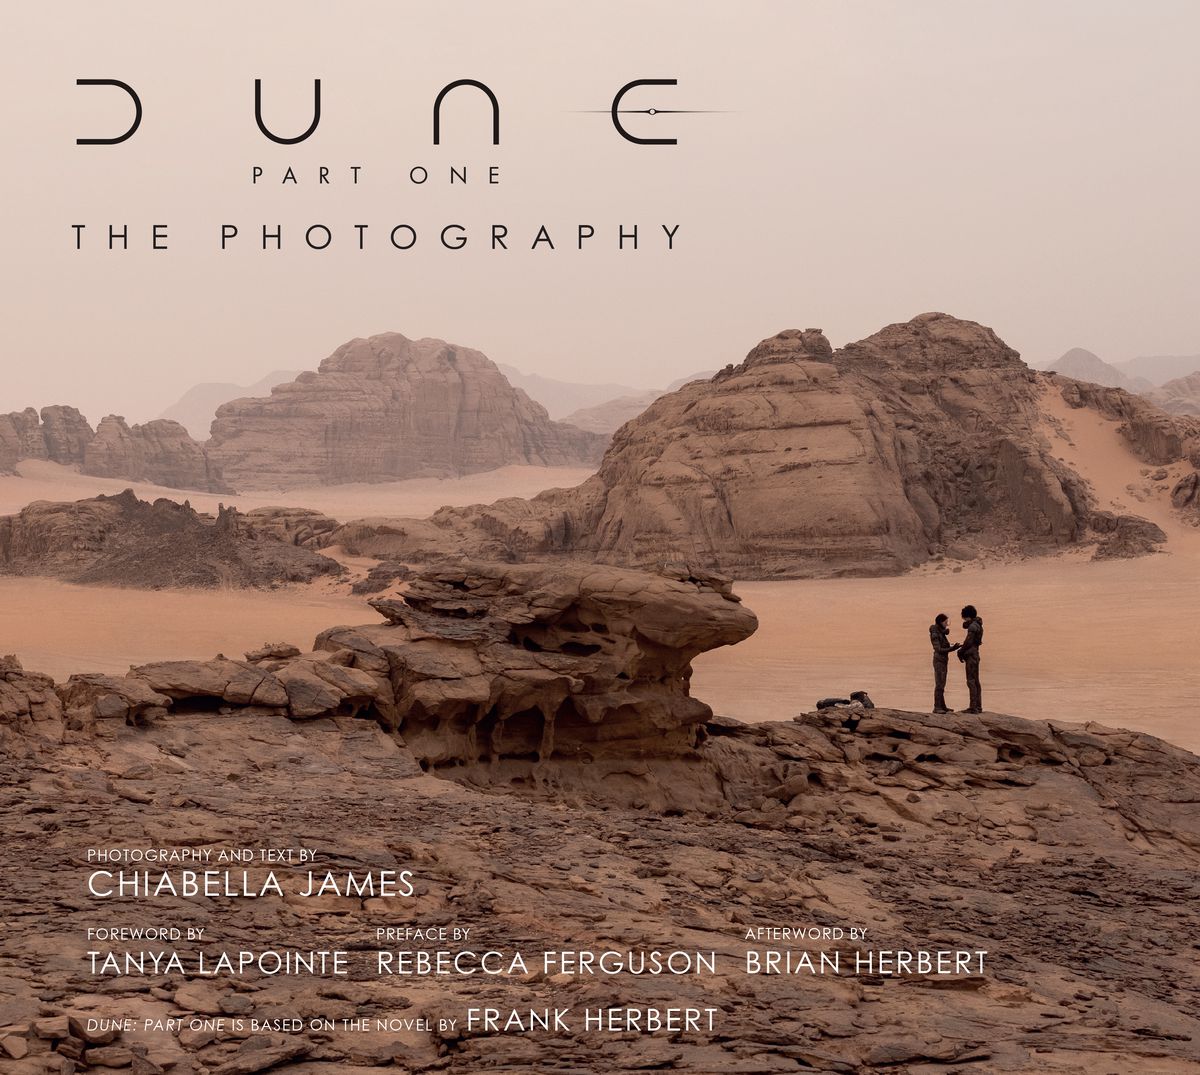 La couverture de Dune Part One: The Photography, qui montre deux personnes debout sur une falaise rocheuse dans le désert